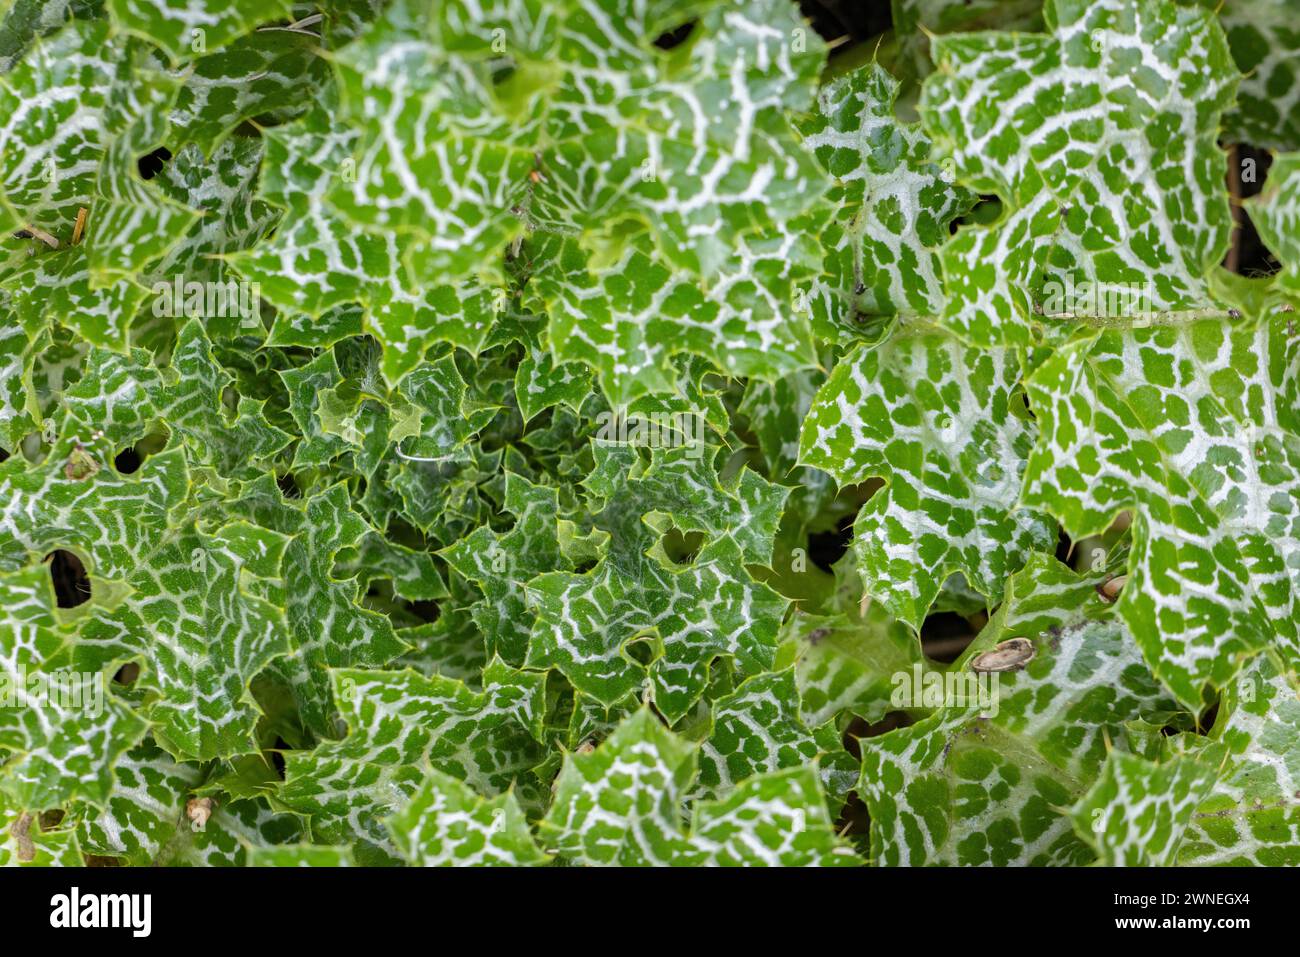 Full-format image of leaves of a carduus marianus (Silybum marianum), Neunkirchen, Lower Austria, Austria Stock Photo